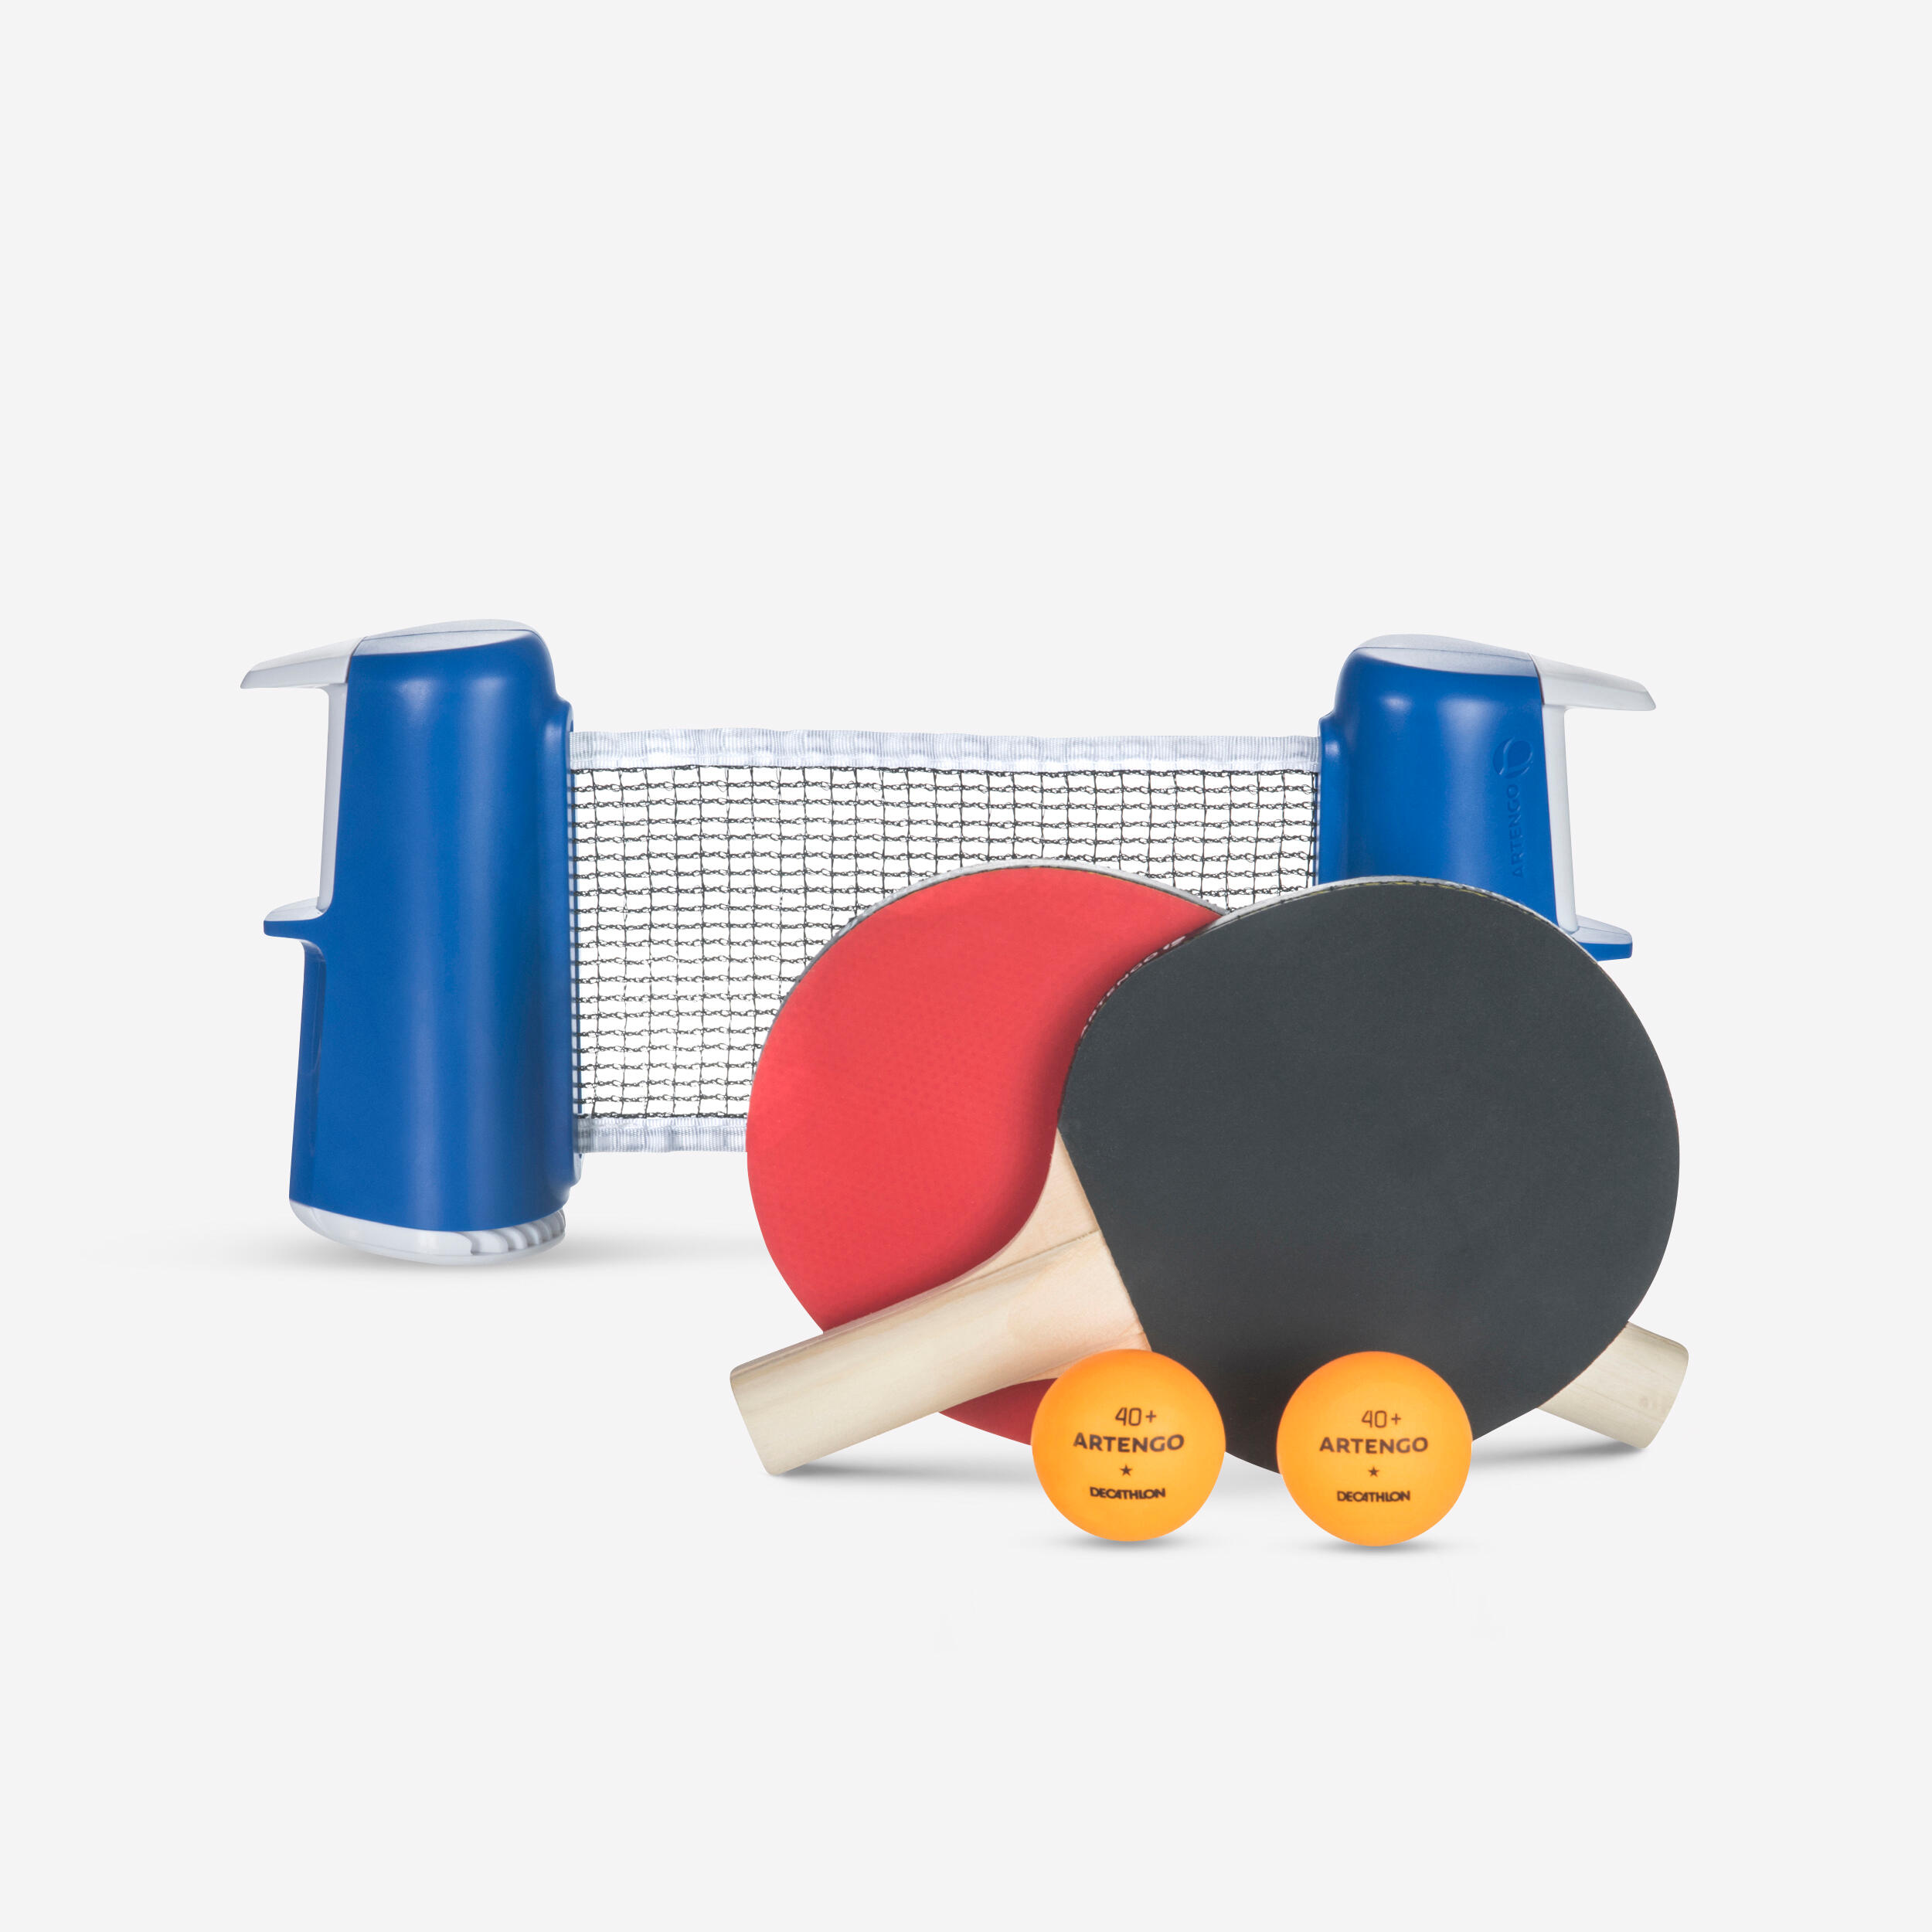 sacchetto di cotone Myhozee Set da ping pong portatile per giocare in interni o esterni 4 palline 2 racchette da ping pong rete da ping pong estraibile 